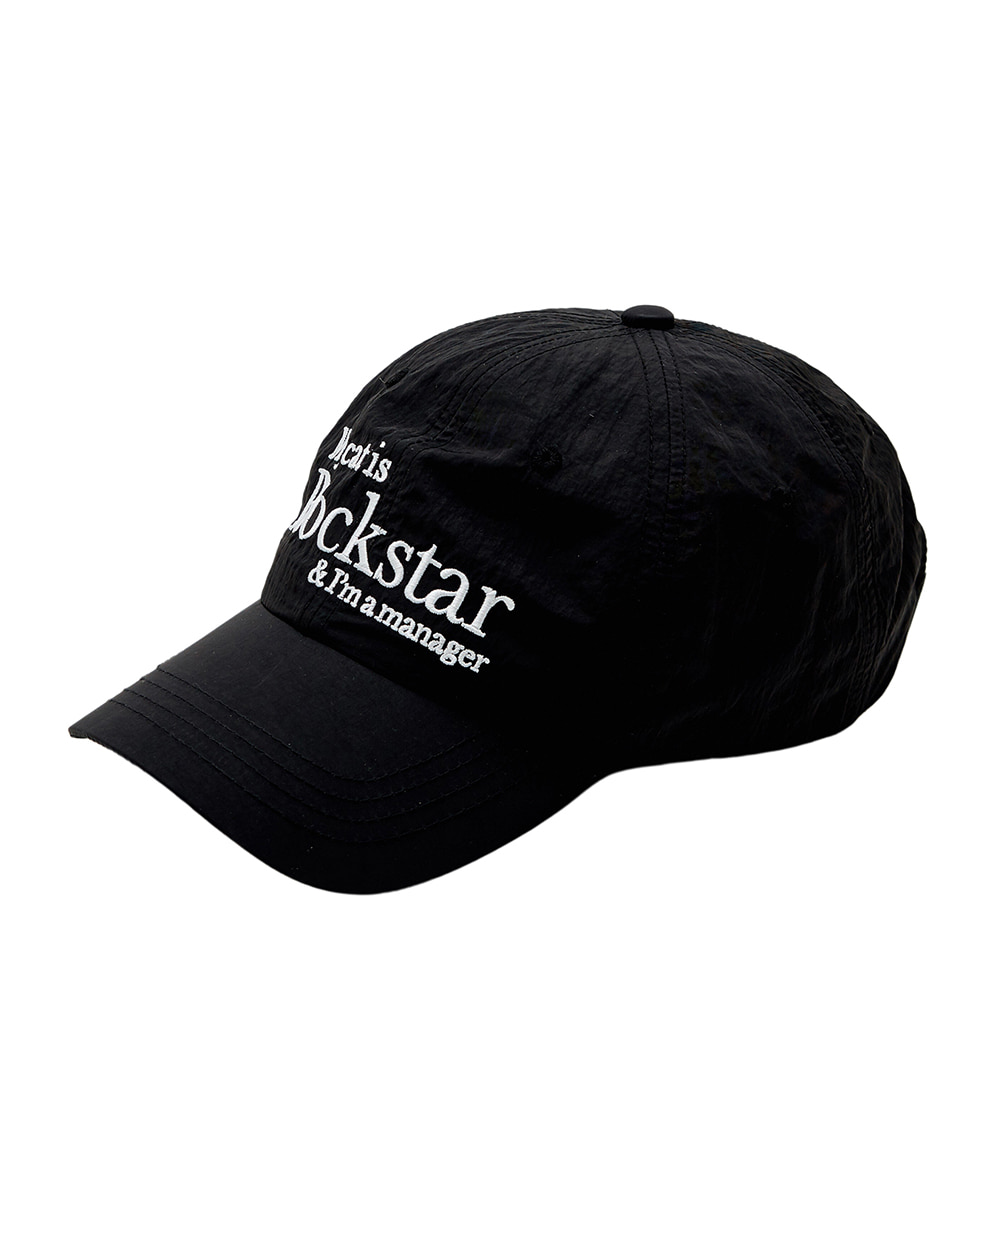 조거쉬 Rockstar cat cap (Black) *RESTOCK*